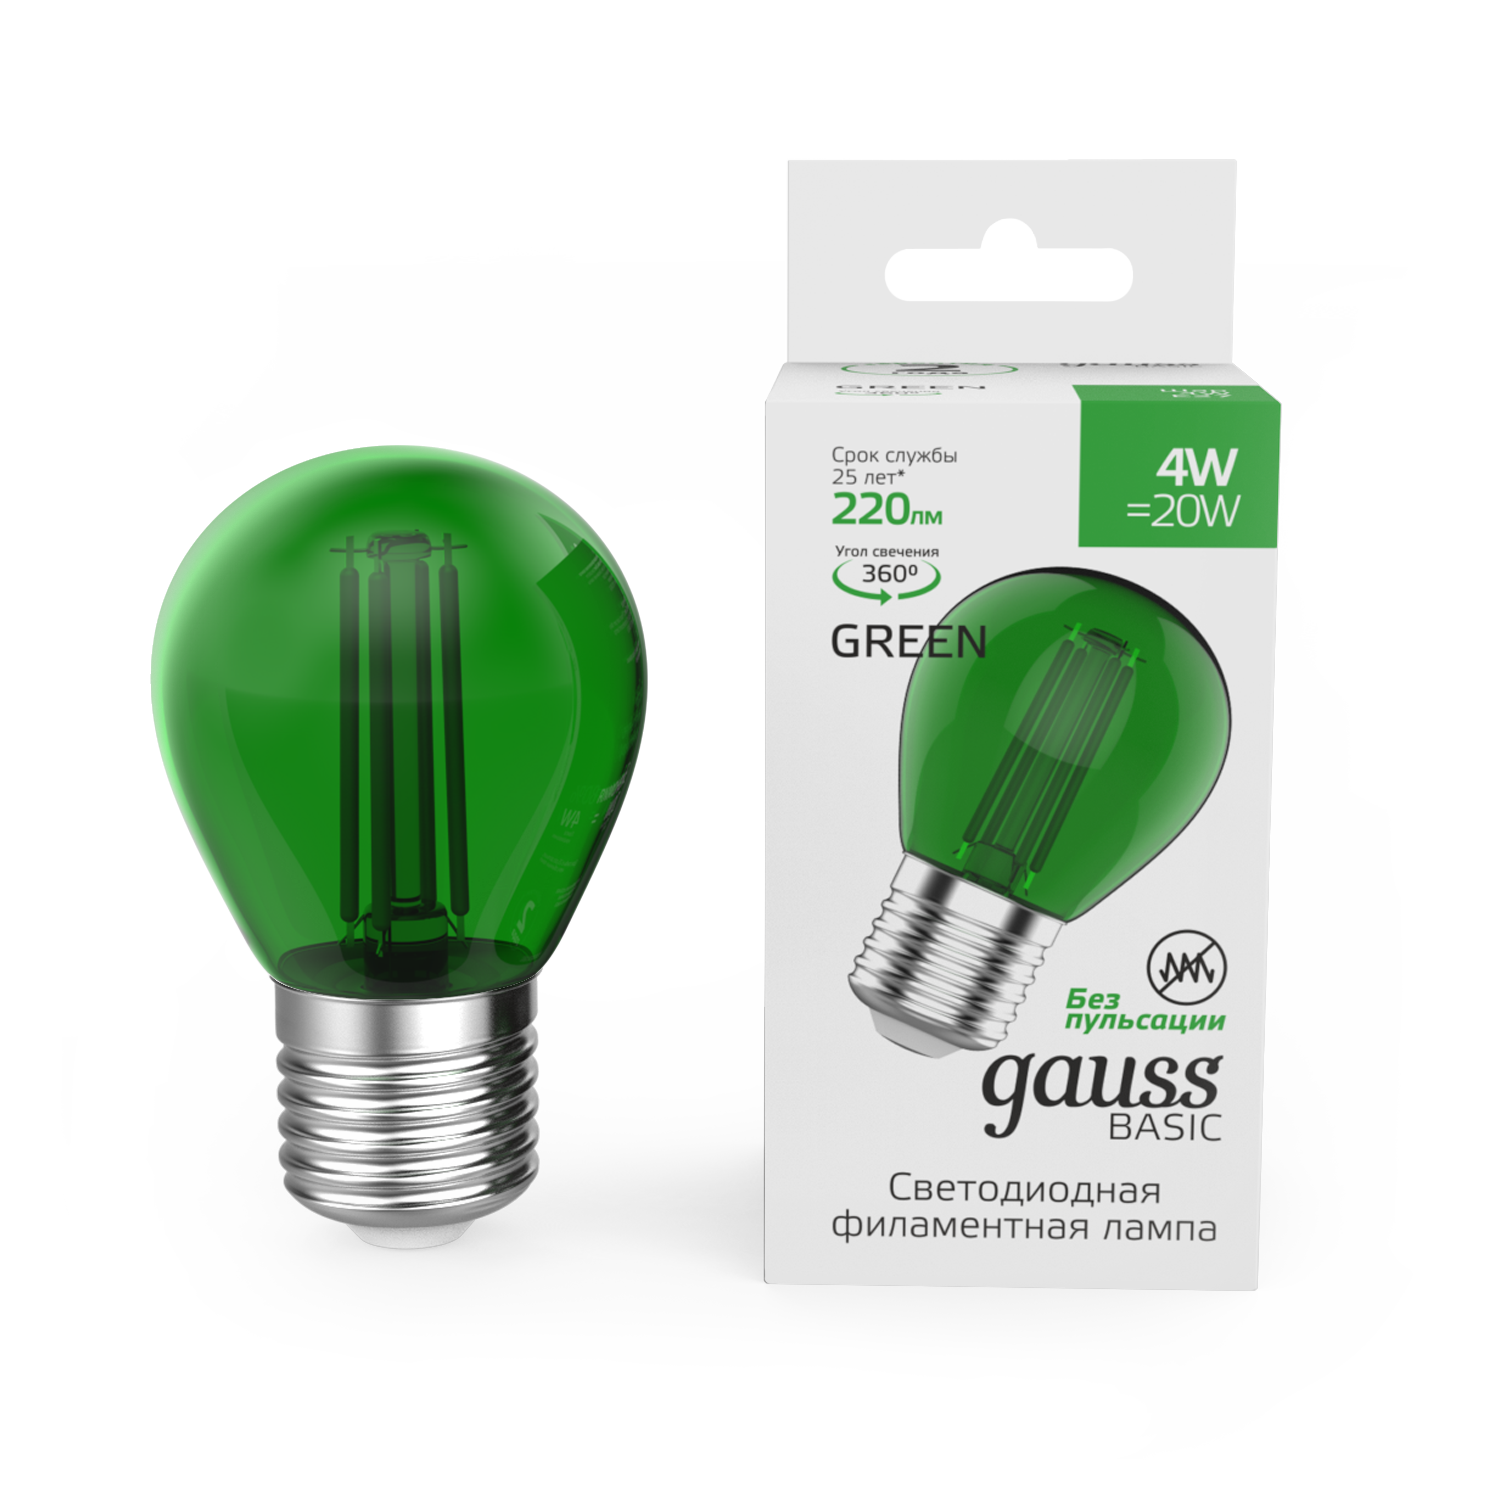 Лампа Gauss Basic Filament Шар 4W 220lm Е27 green LED 1/10/50